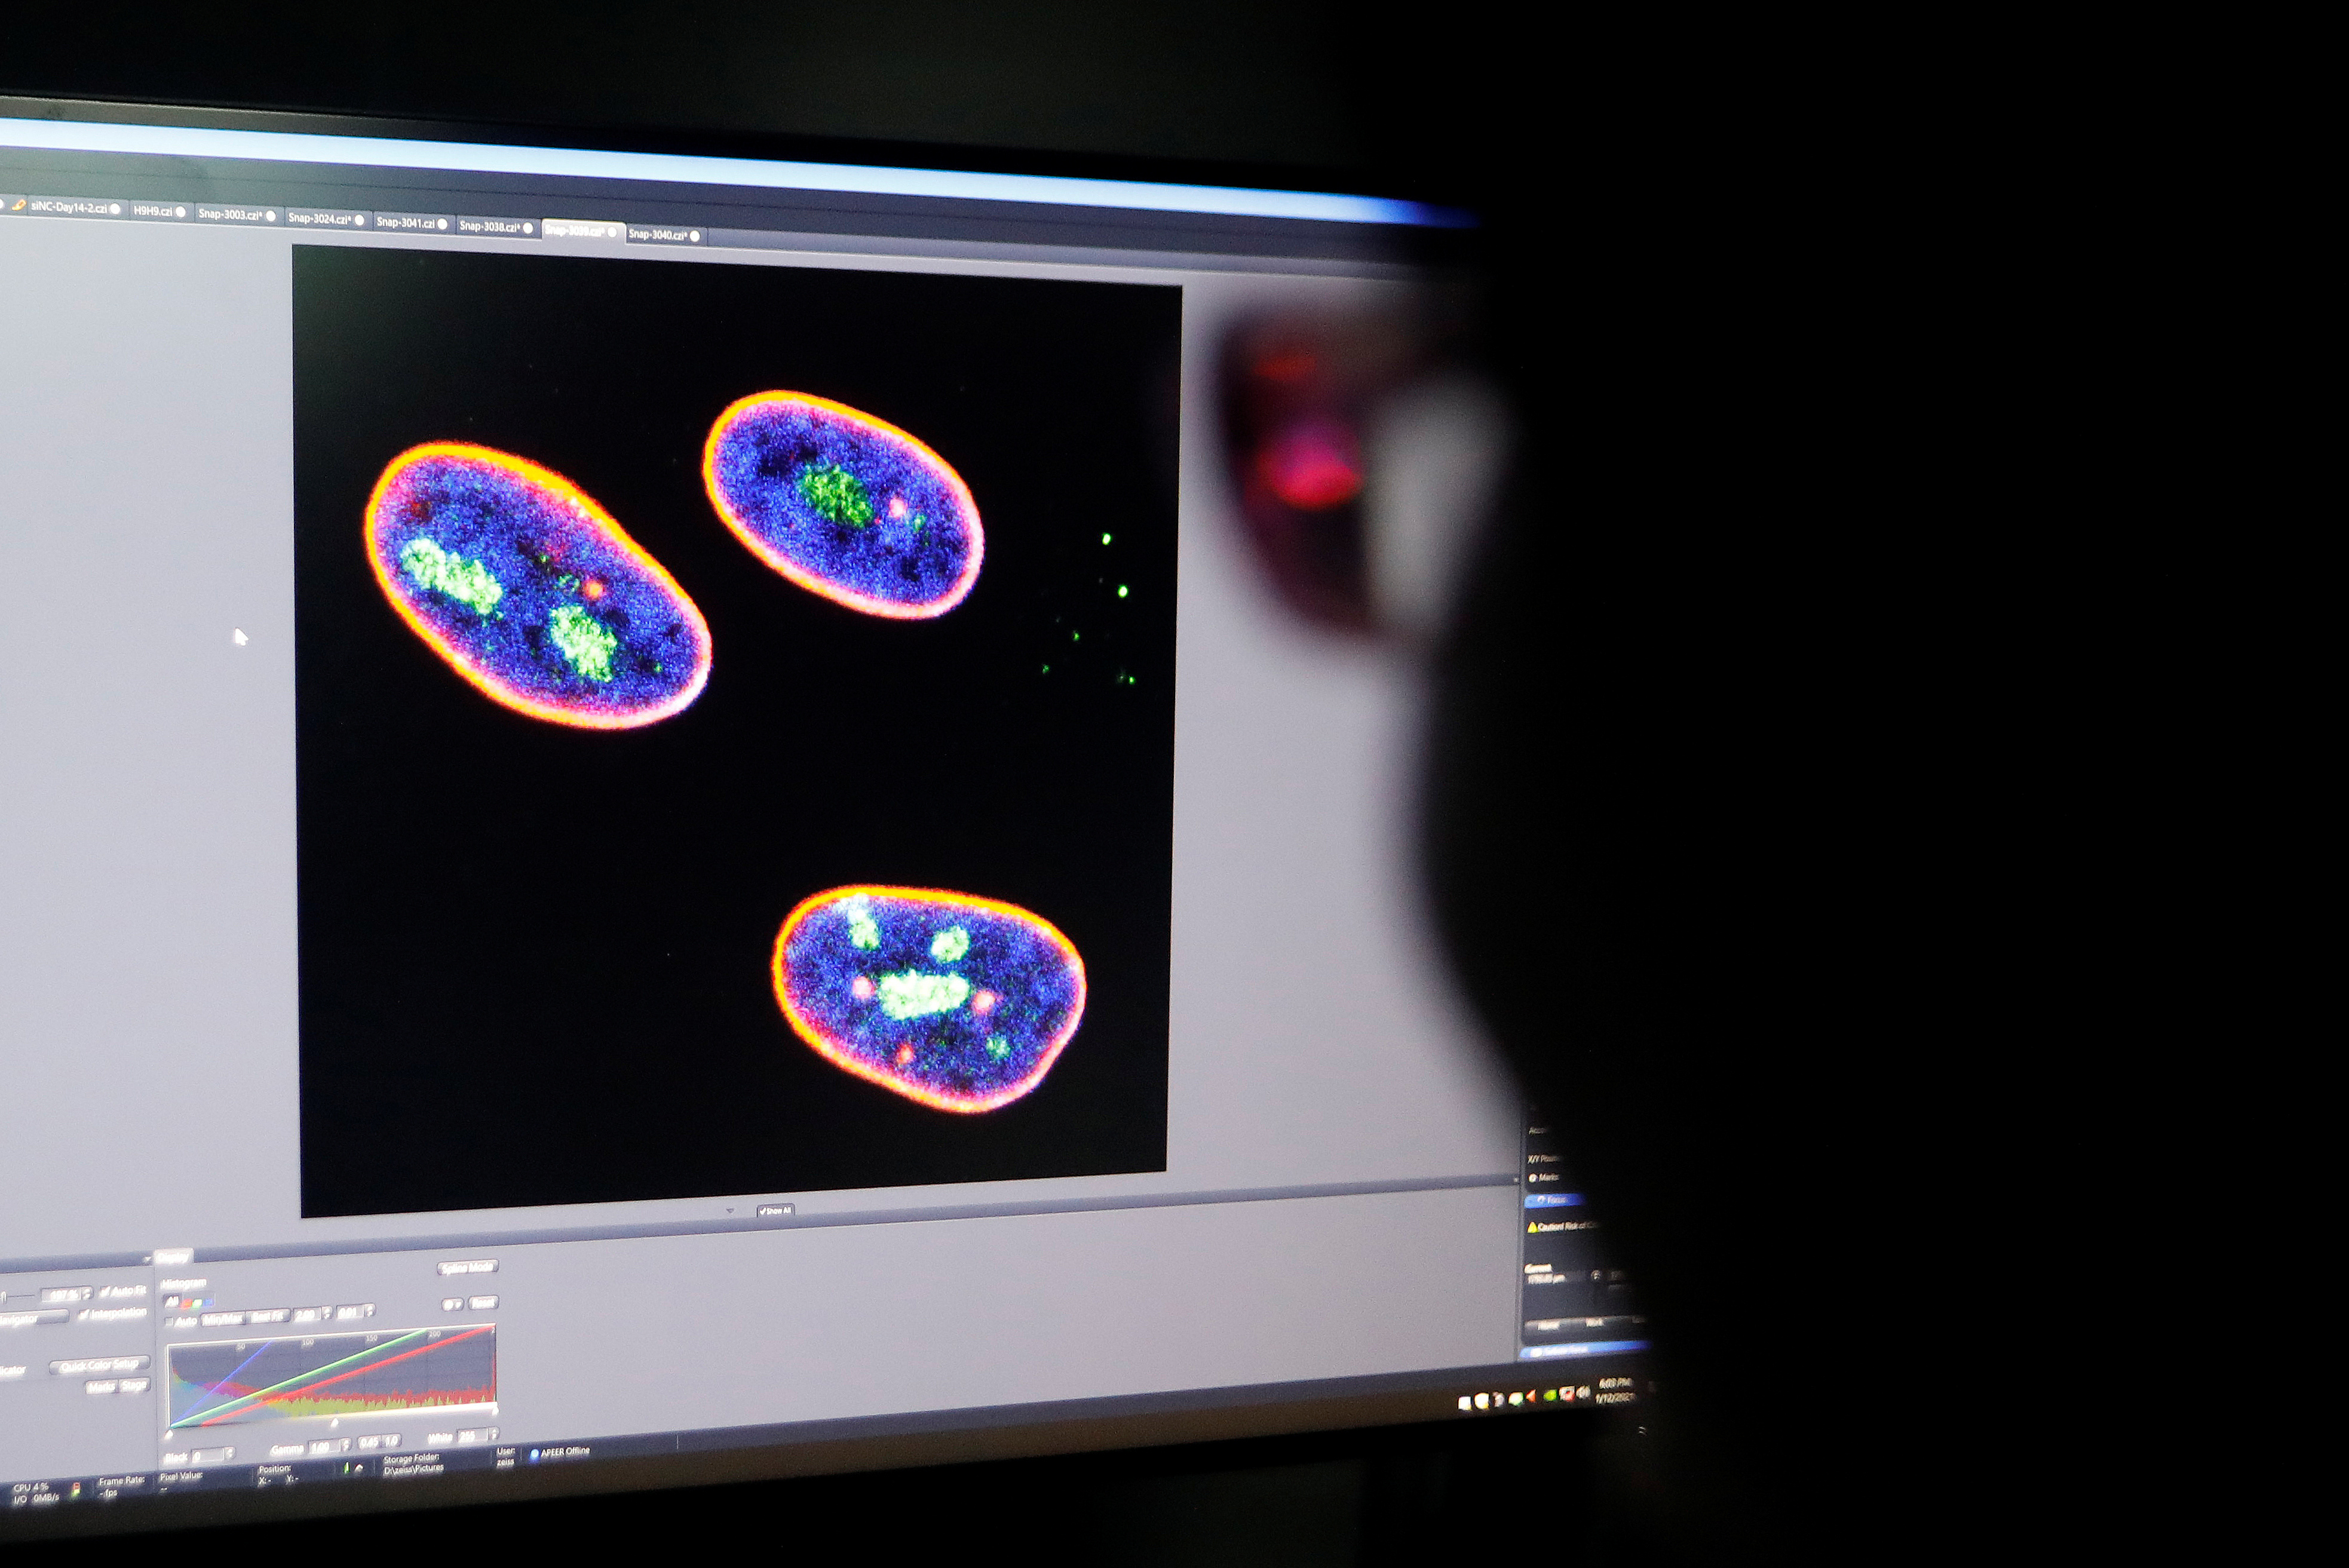 Un investigador observa la imagen confocal en una pantalla que muestra el núcleo de células madre en el laboratorio de Envejecimiento y Regeneración del Instituto de Células Madre y Regeneración de la Academia China de Ciencias (CAS) en Beijing (REUTERS/Tingshu Wang)